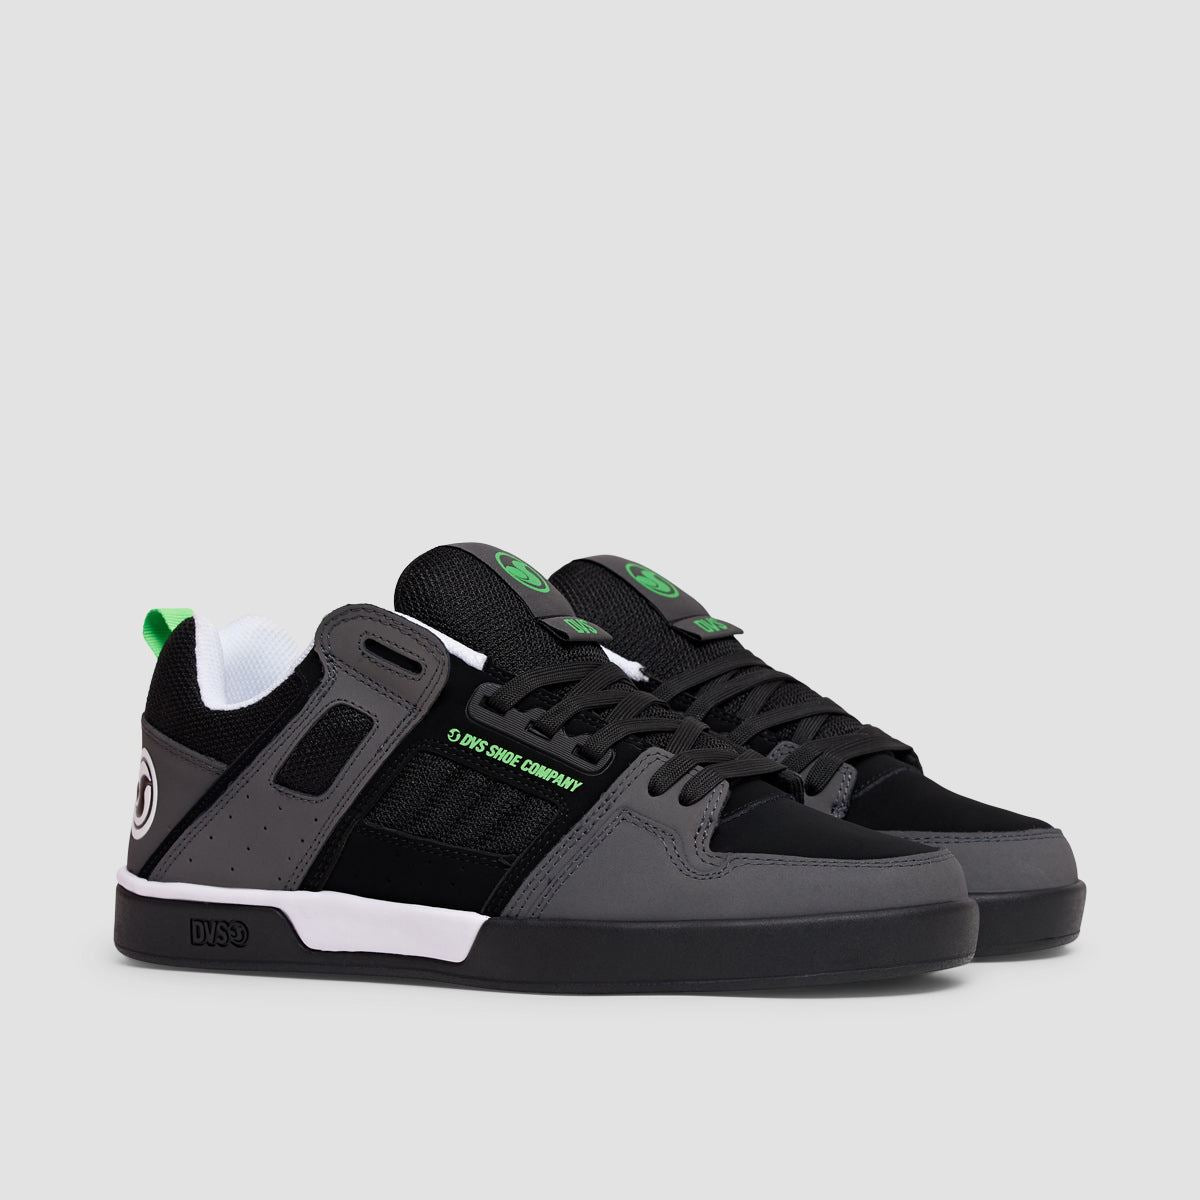 DVS Comanche 2.0+ Shoes - Black/Charcoal/Lime Nubuck